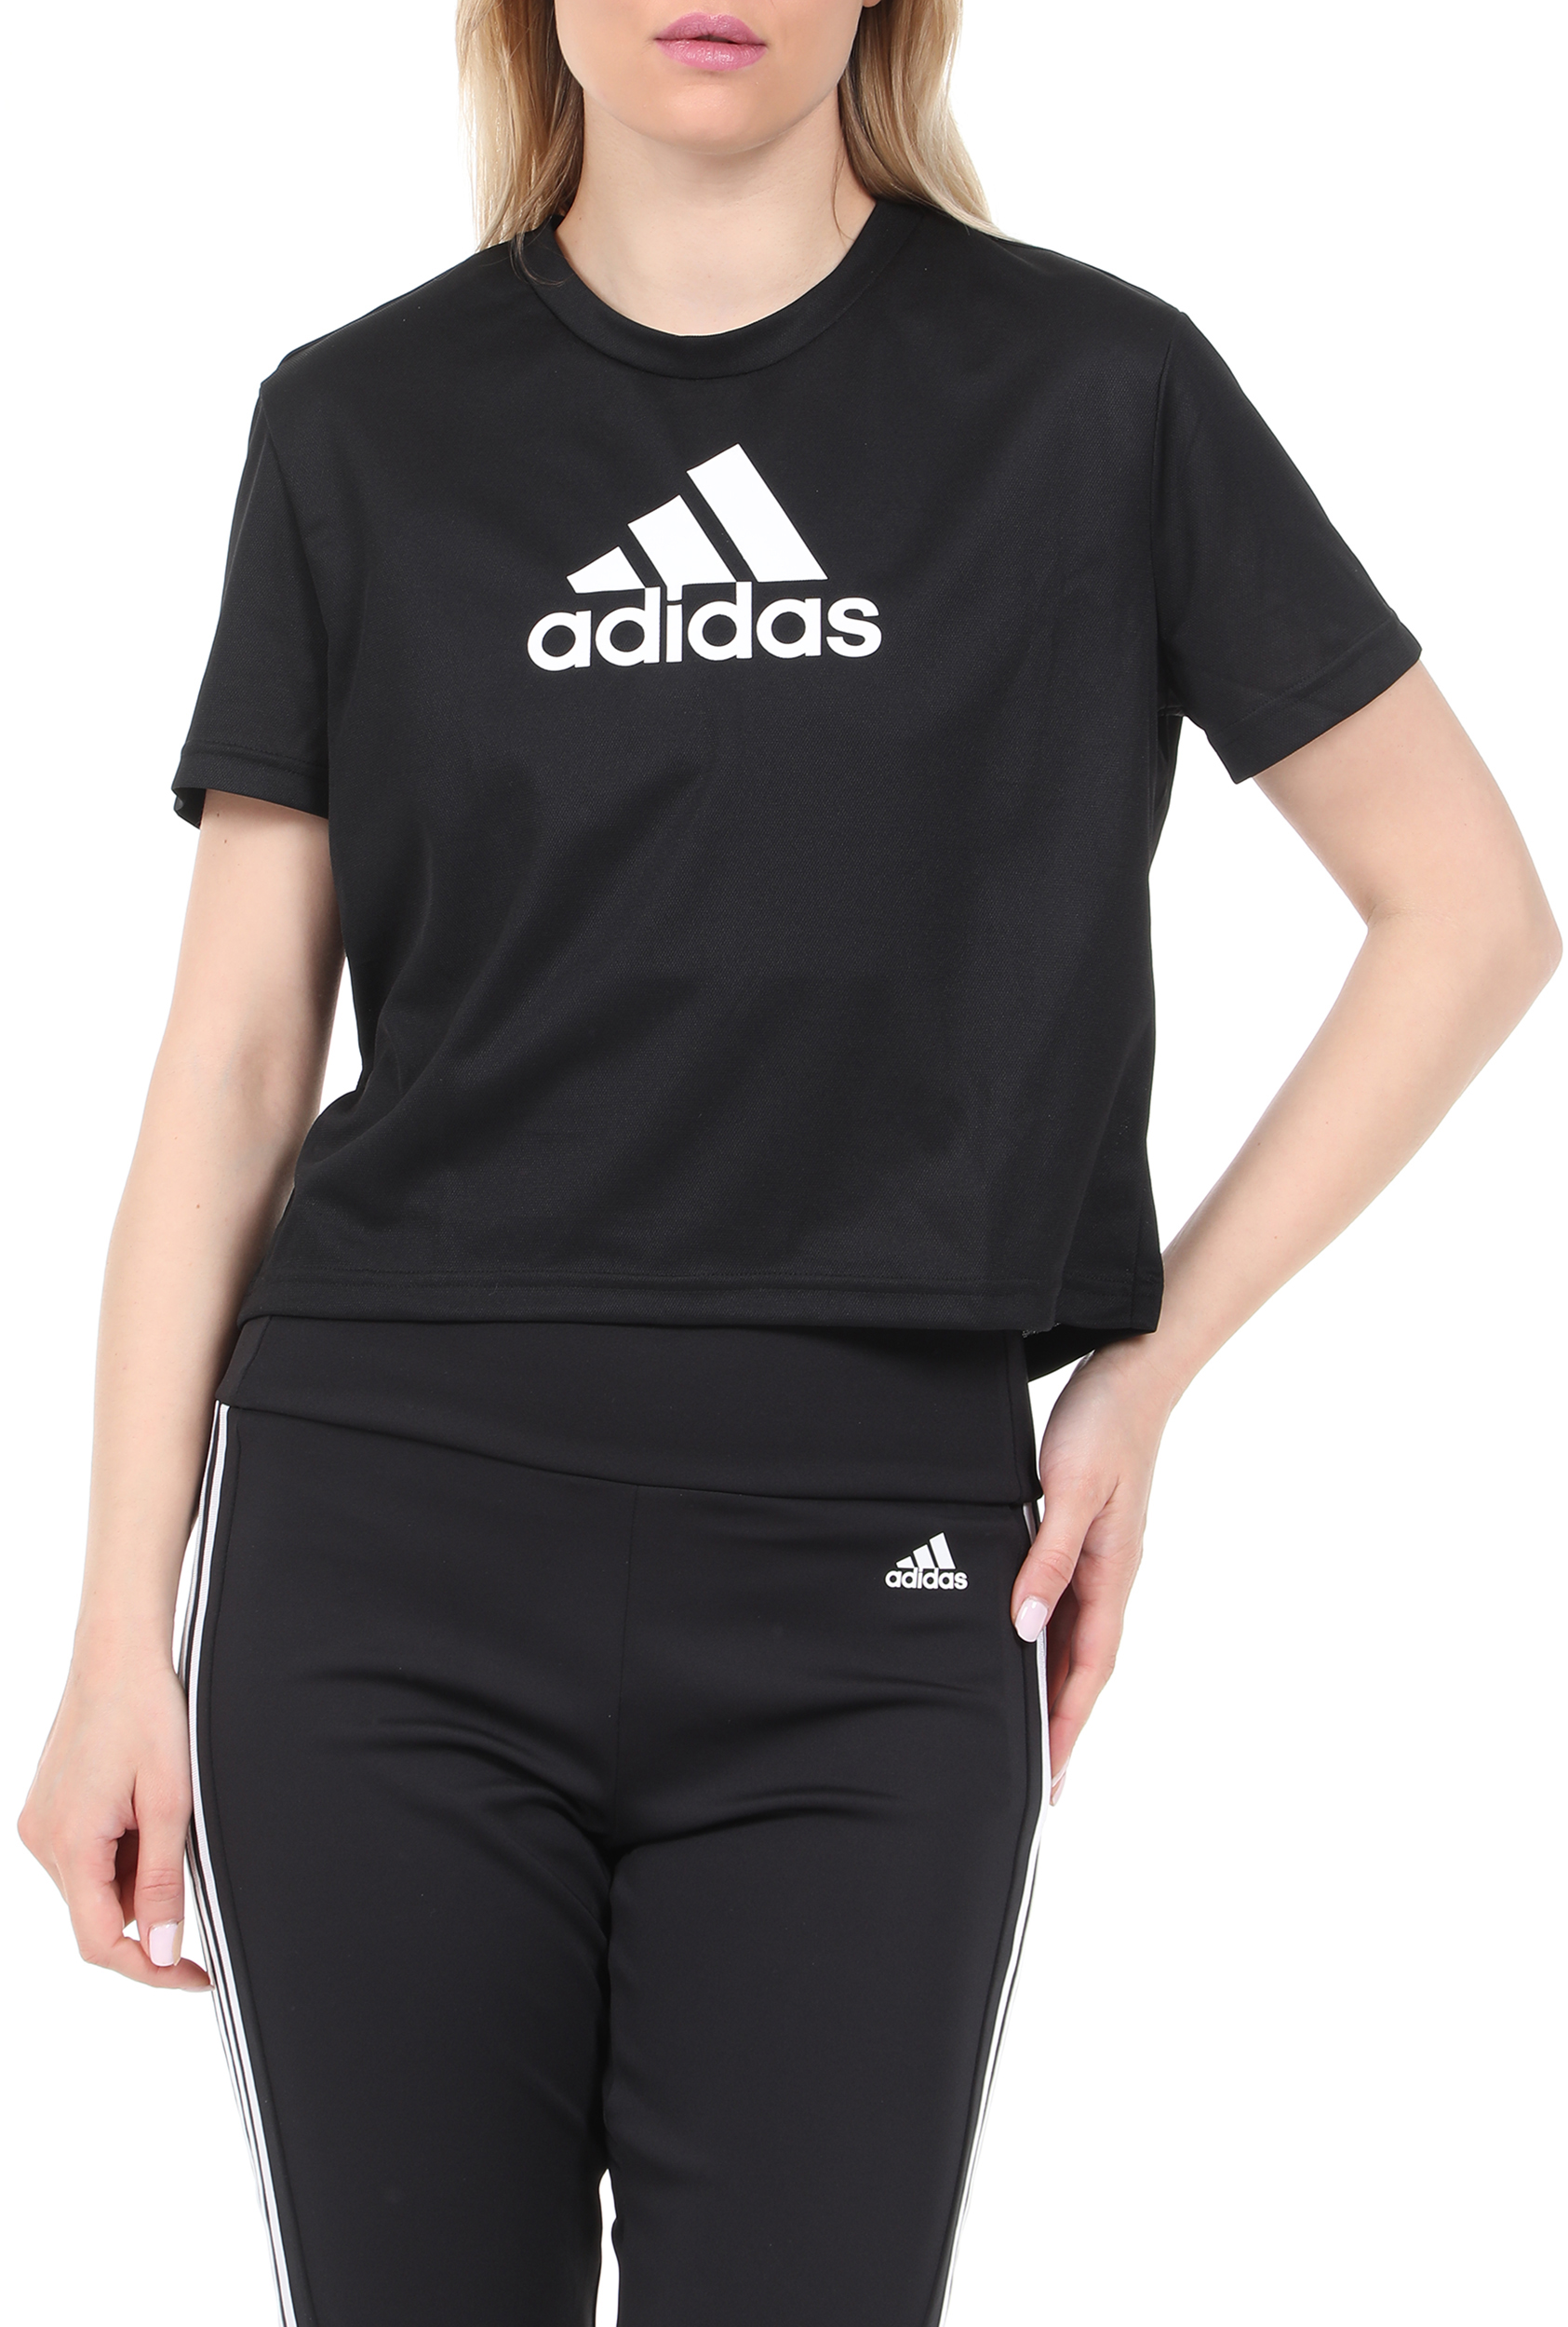 Γυναικεία/Ρούχα/Αθλητικά/T-shirt-Τοπ adidas Originals - Γυναικείο cropped top adidas Originals BL μαύρο